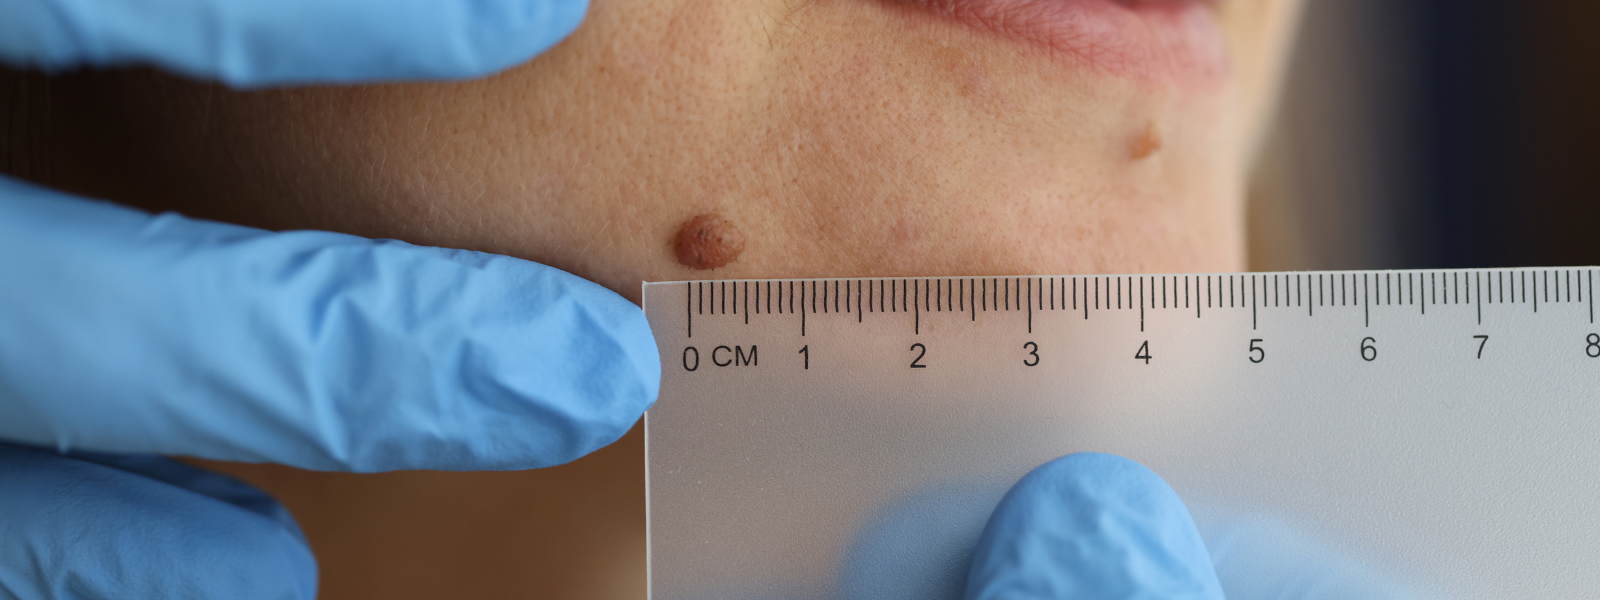 Dermatologist measures bump on patient's face